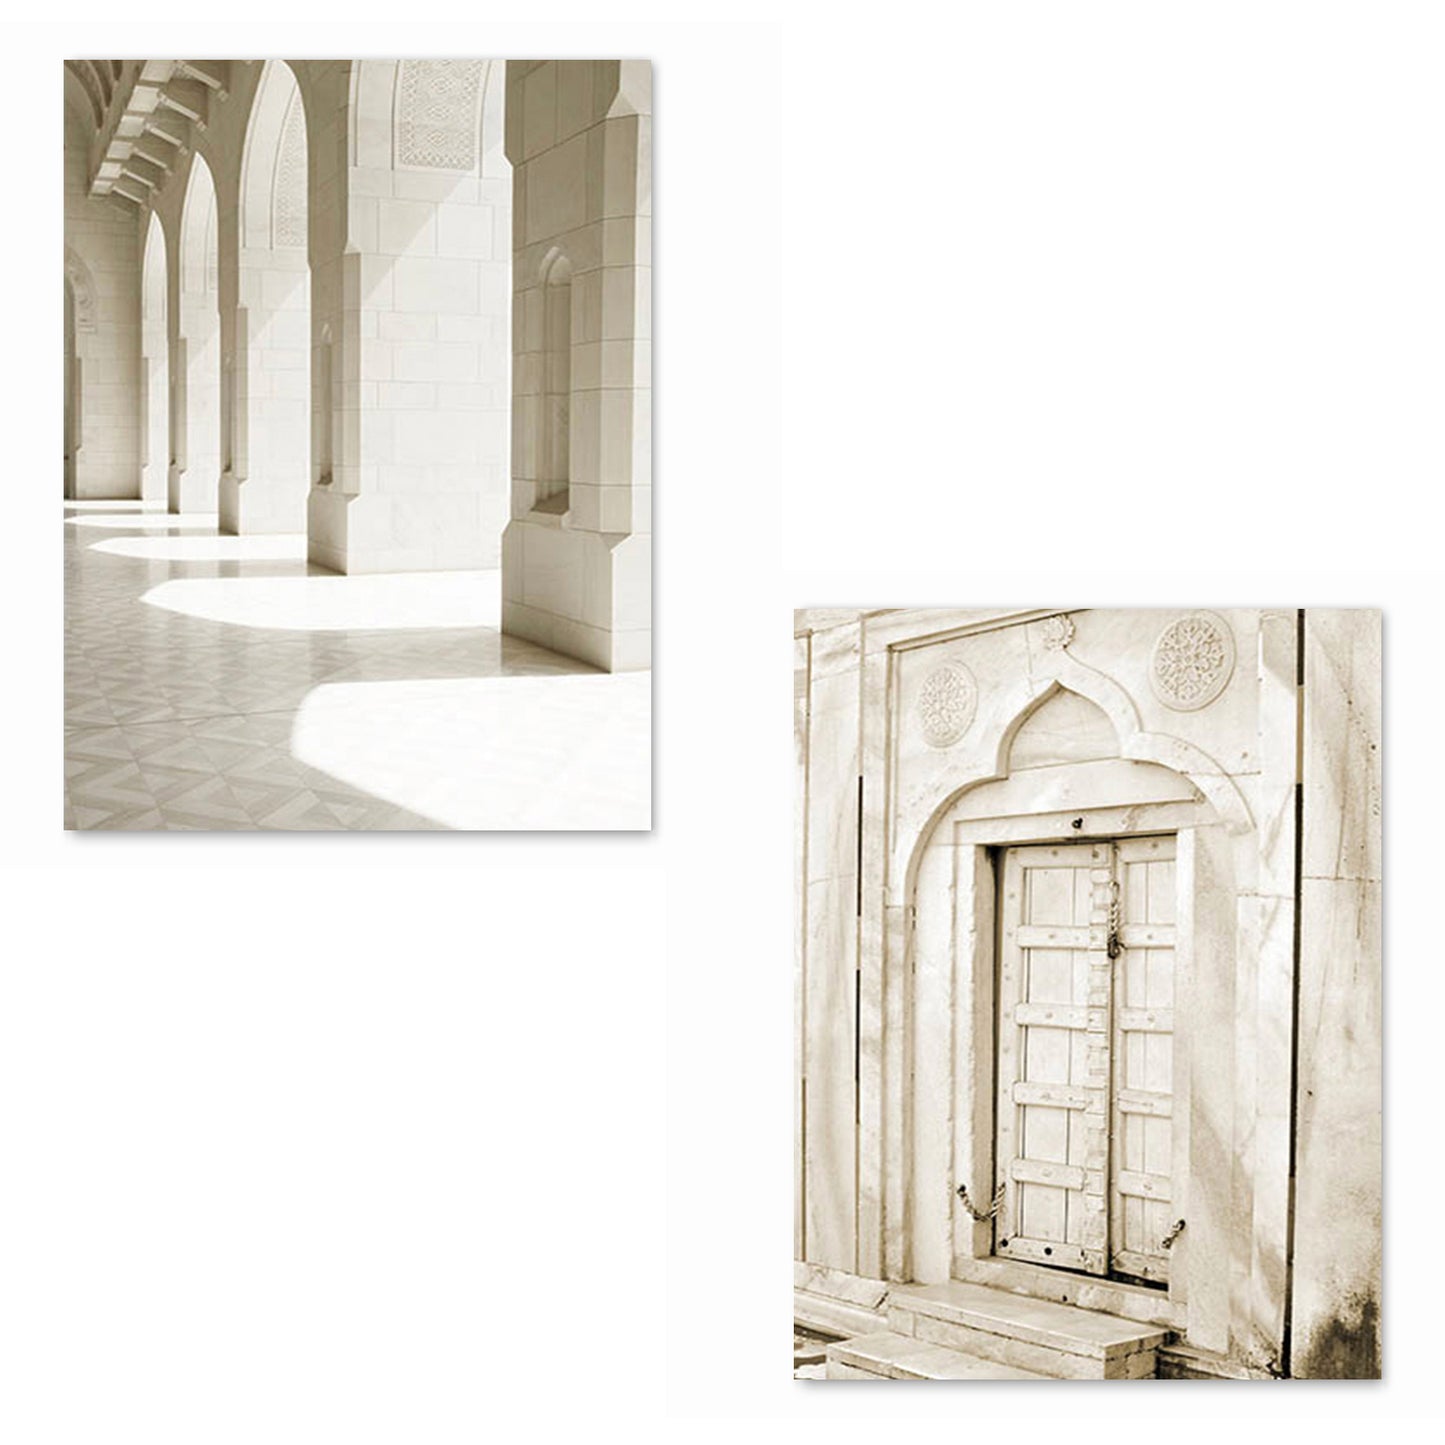 [unframed] Islamic Architecture Taj Mahal Prints Wall Art